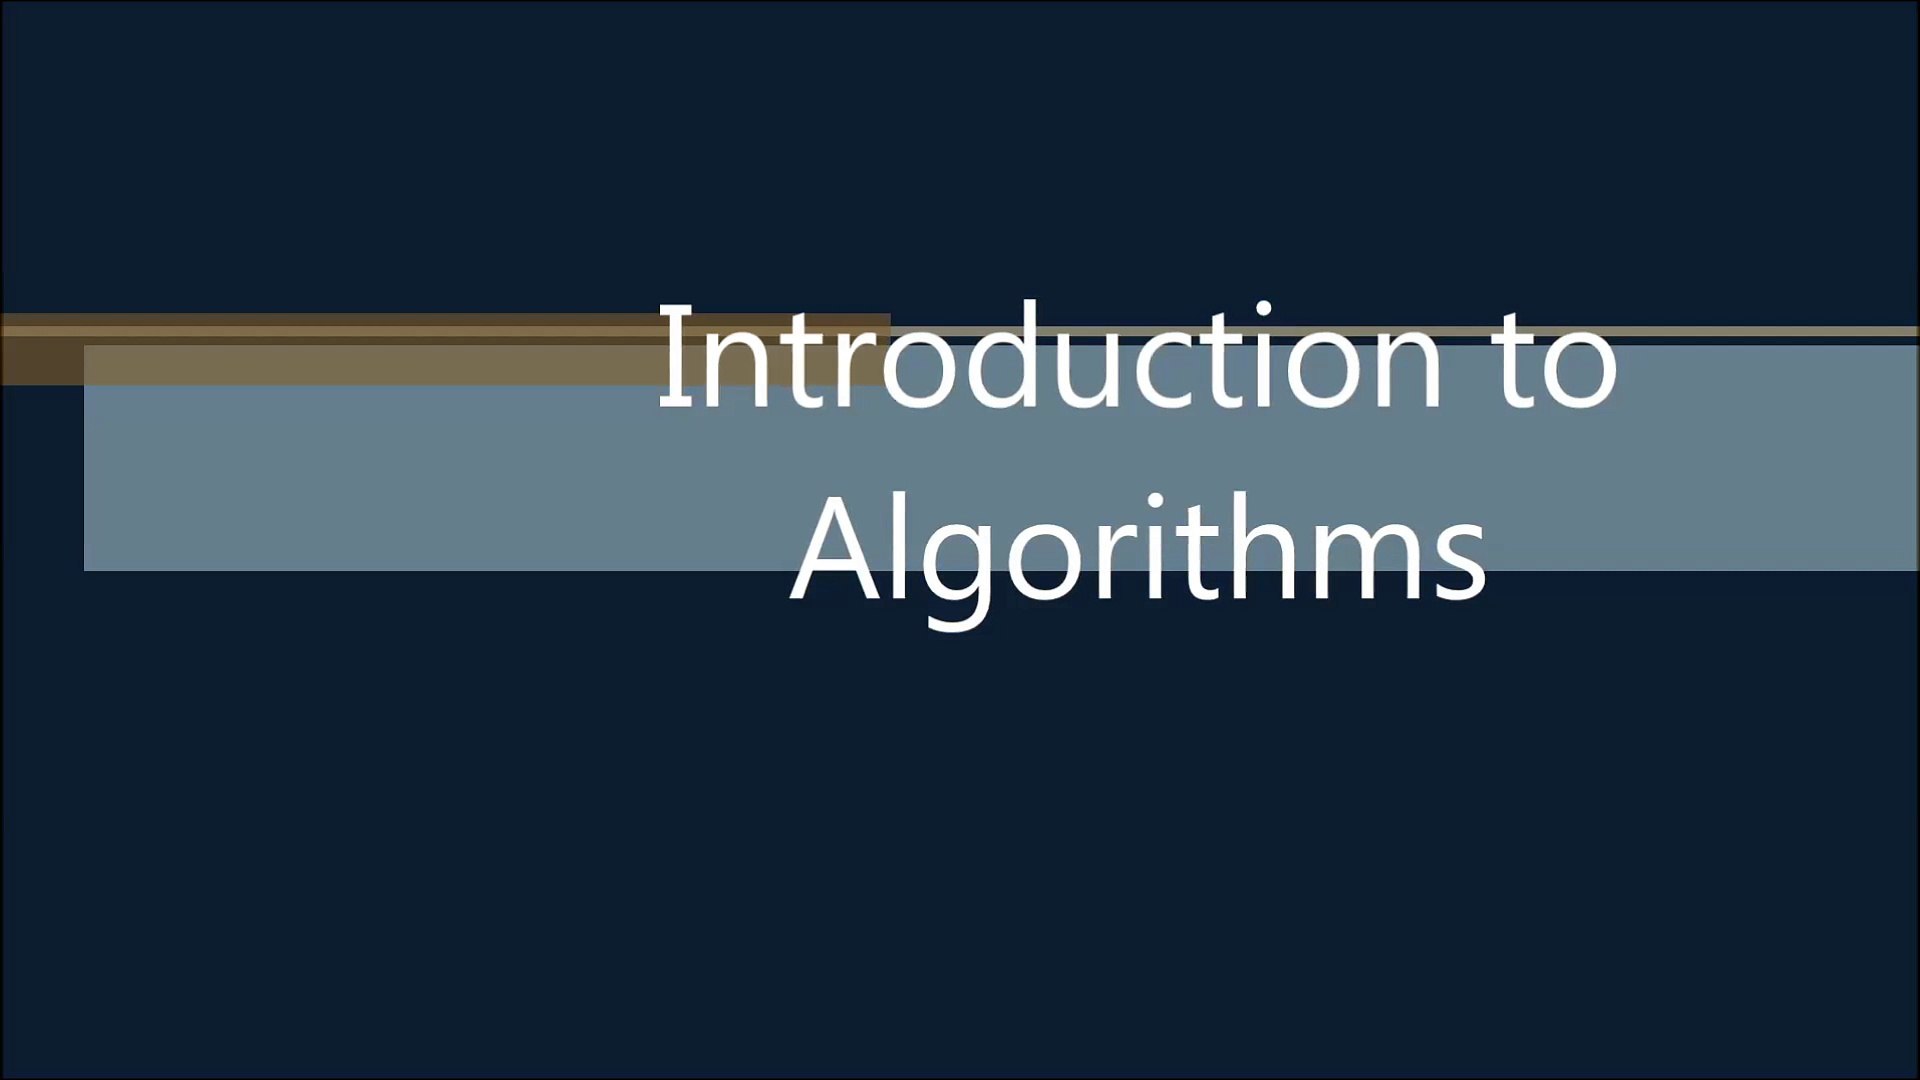 1. Introduction to Algorithms Part 1